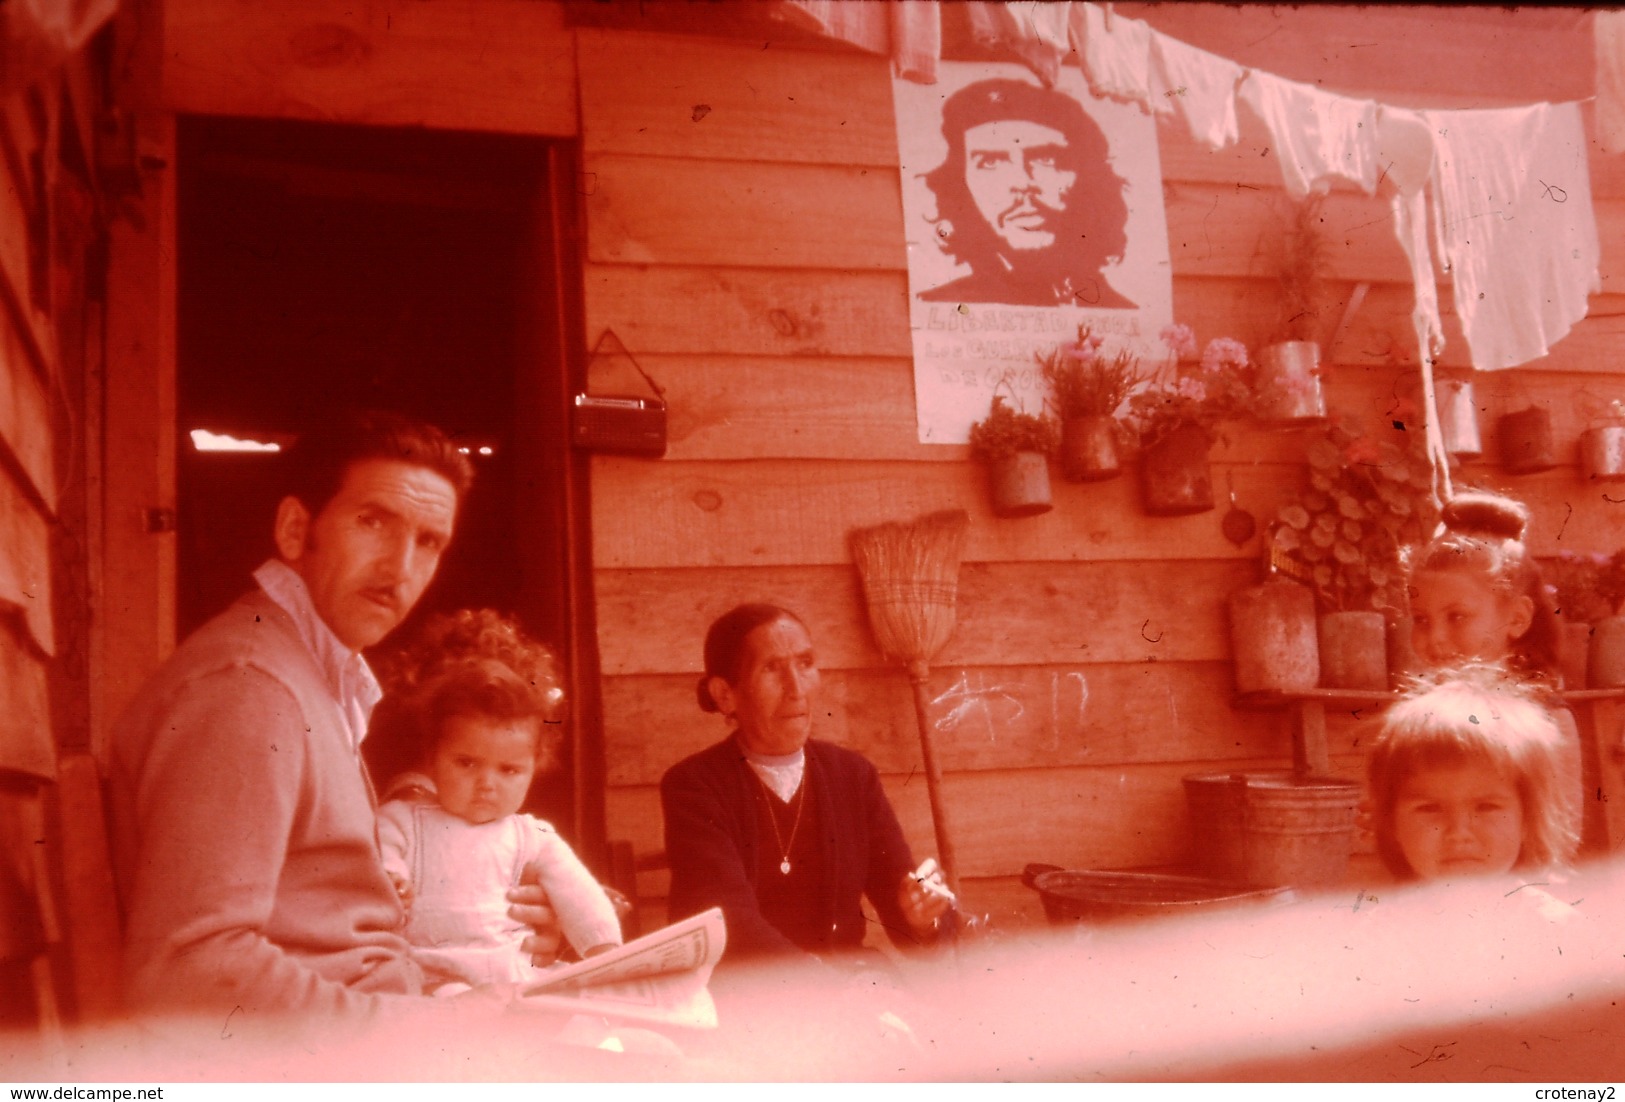 Photo Diapo Diapositive Le Monde Des Années 60 N°7 Intérieur Populaire Au Chili Photo De Che Guevara Au Mur VOIR ZOOM - Diapositive